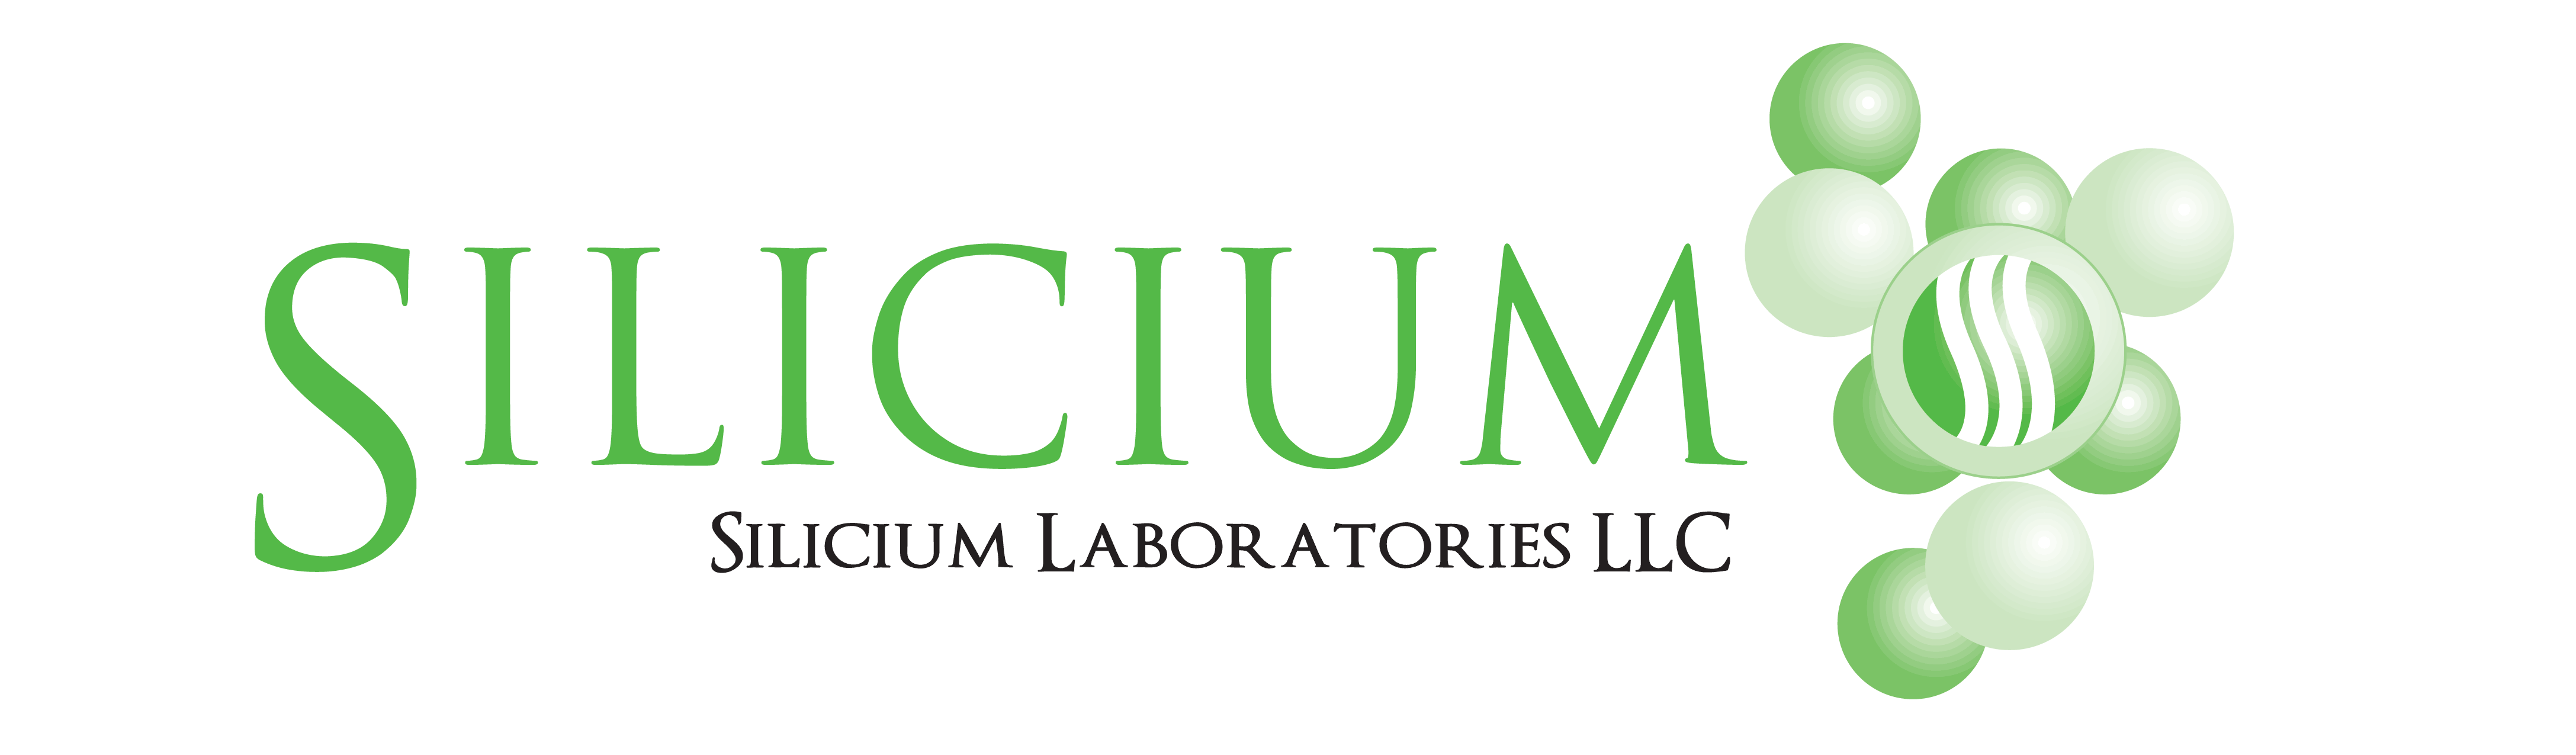 Company Logo For Silicium Laboratories'